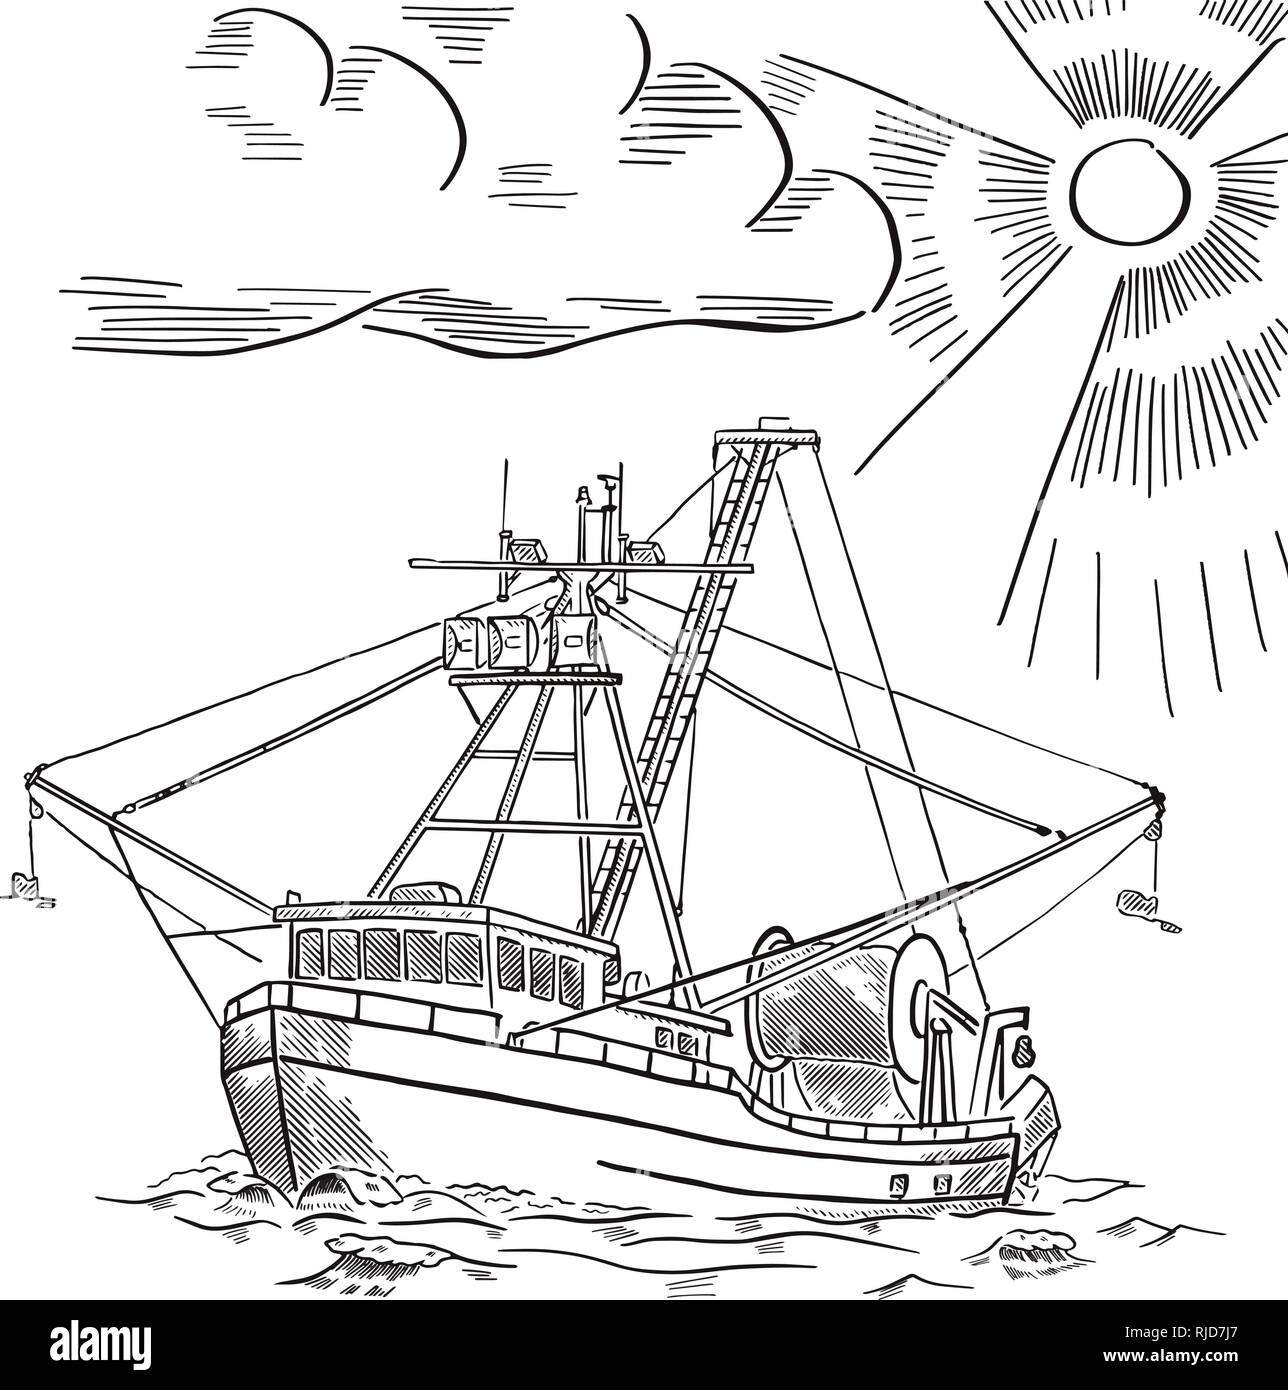 Fishing ship. Salmon fishing boat. Alaska. Hand drawn engraving. Vector illustration. Stock Vector